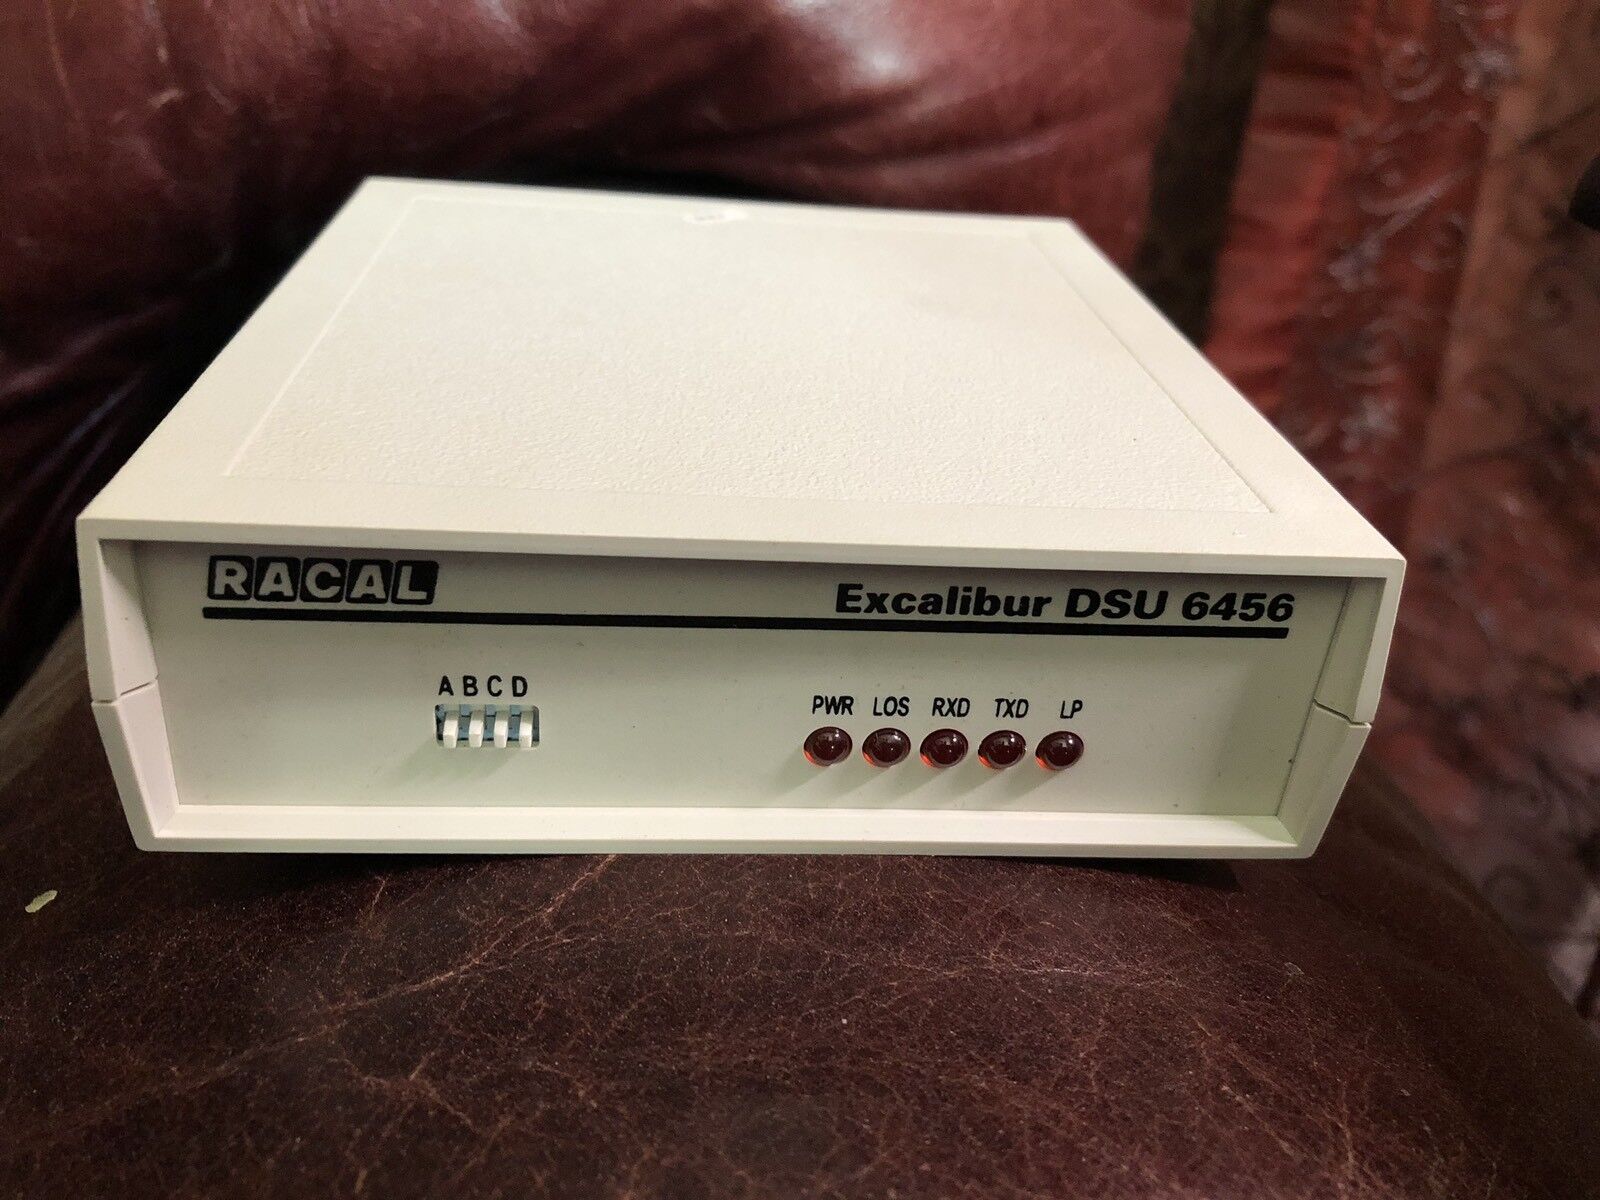 Racal Datacom Excalibur DSU 6456, 15-28A101101AA